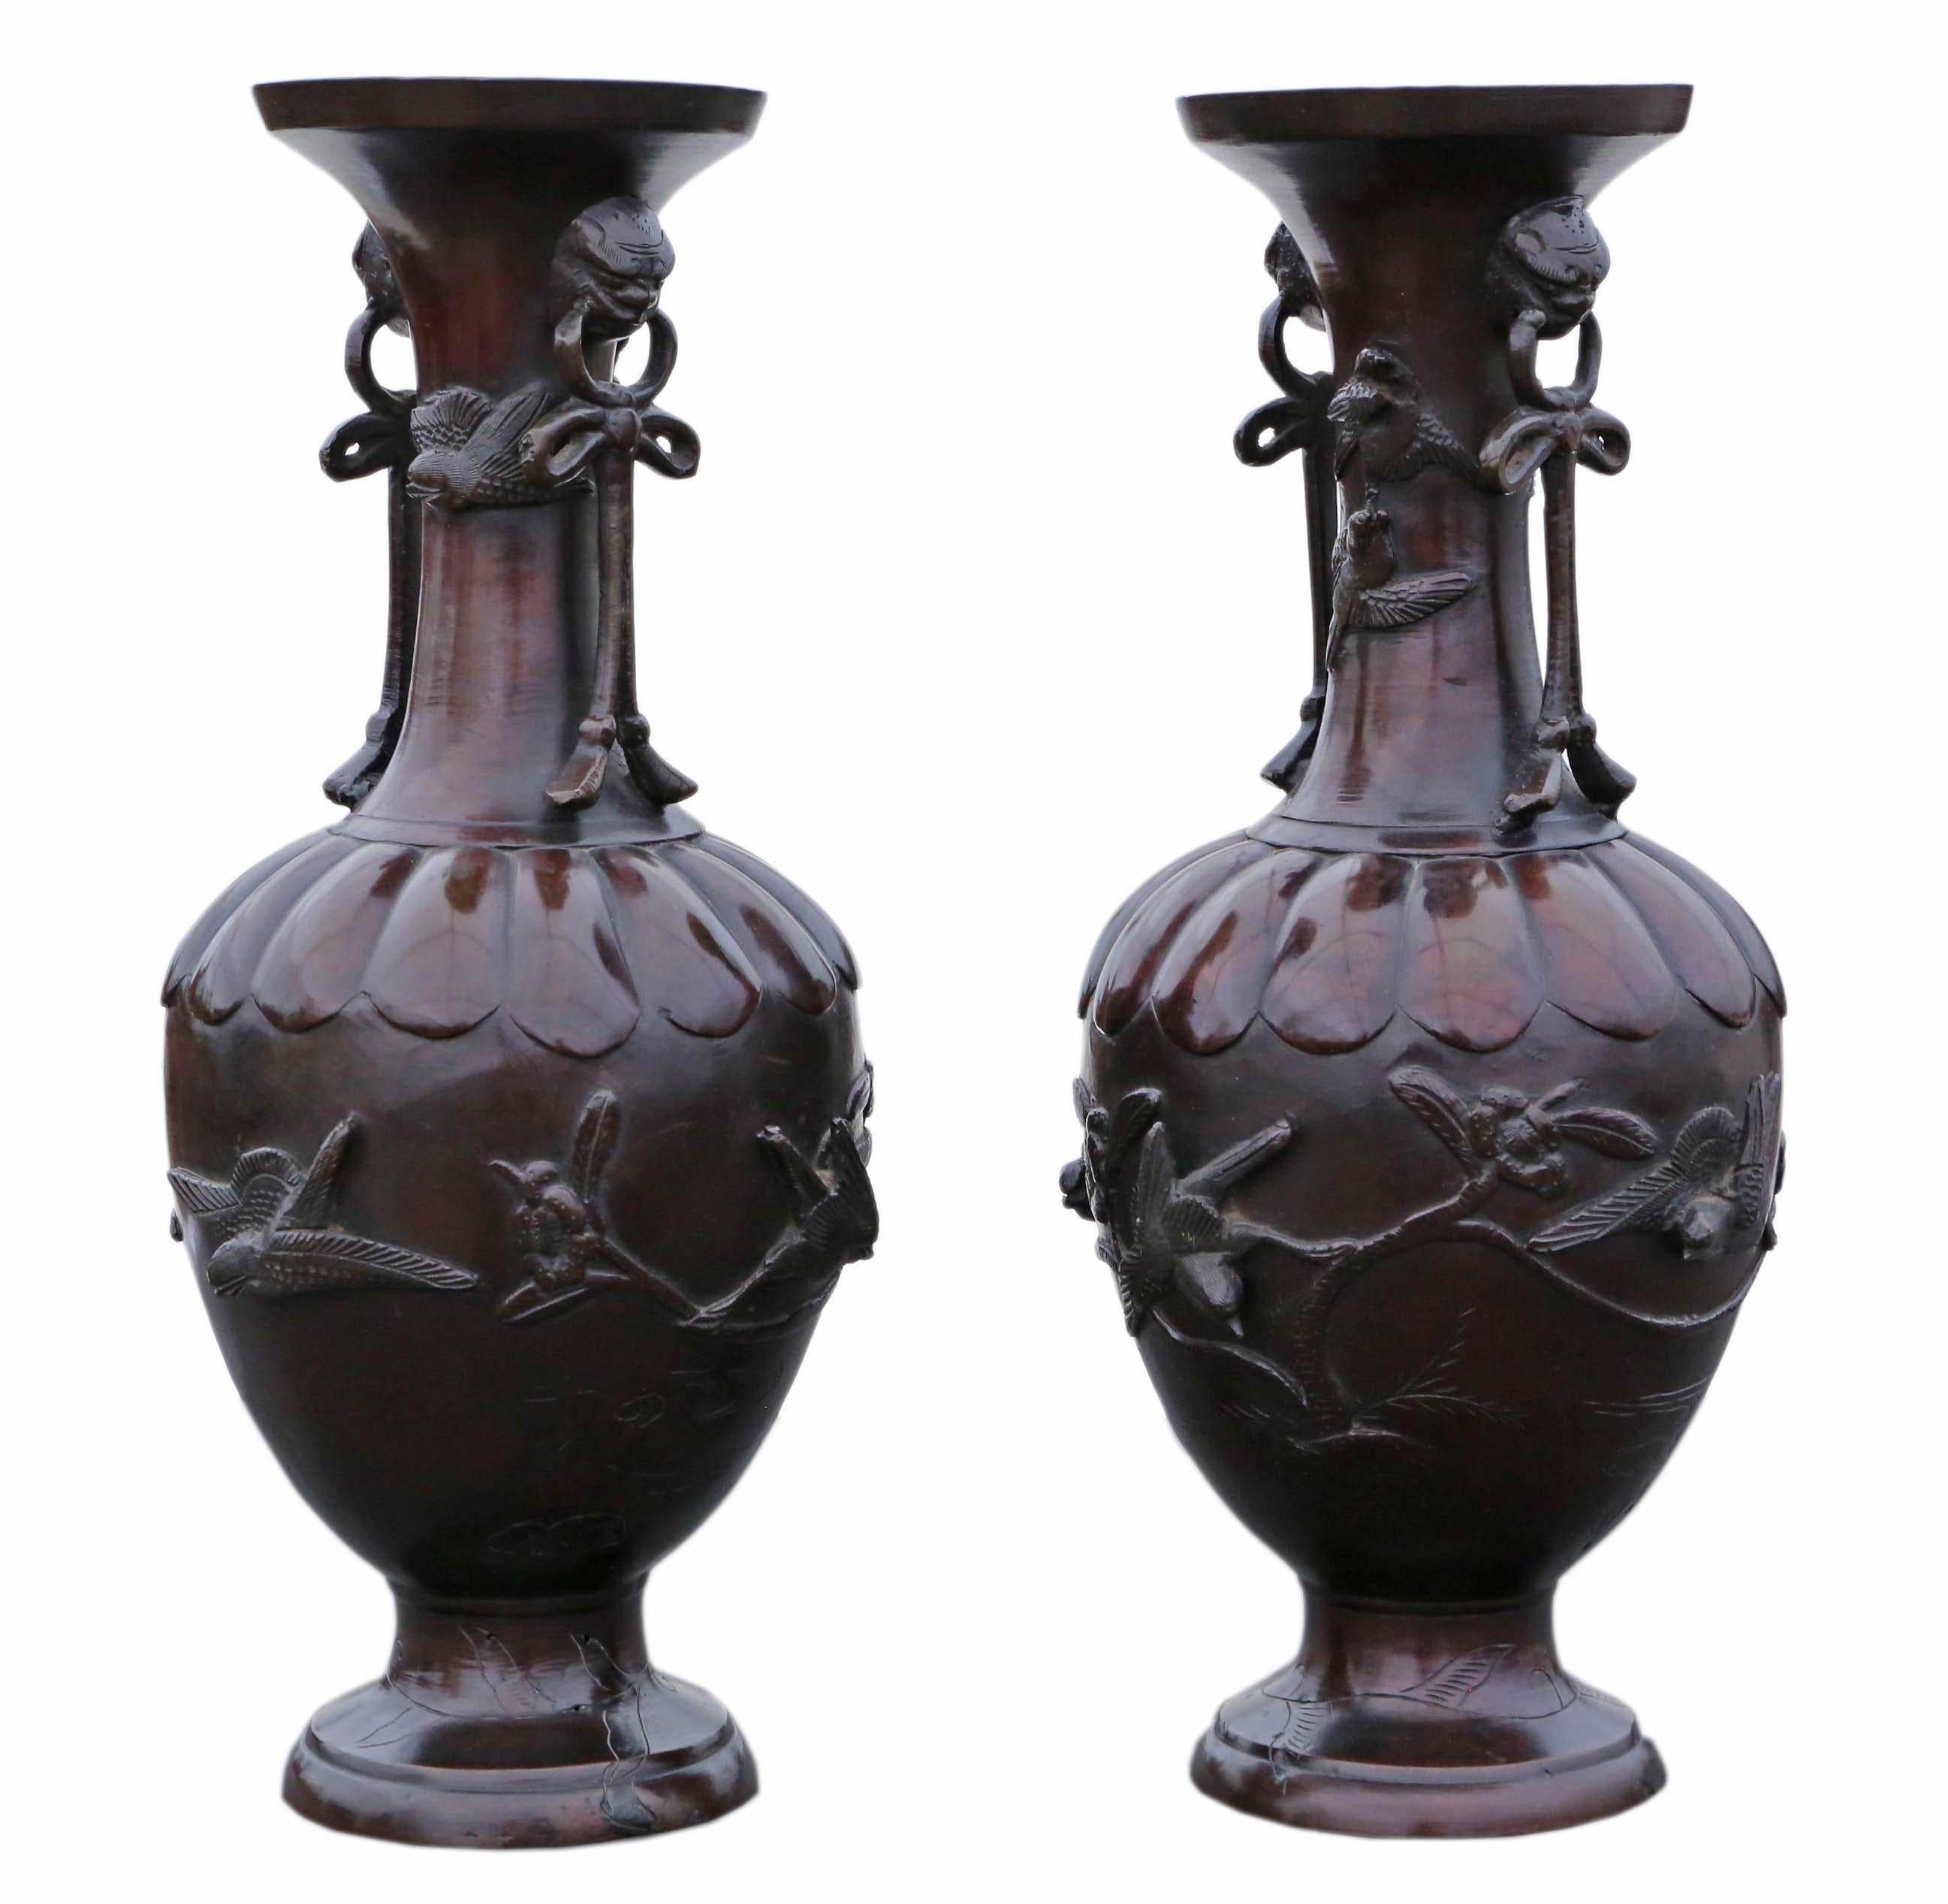 Très grande paire de vases japonais en bronze - Pièces de présentation exquises de la période Meiji !

Ces magnifiques vases japonais en bronze, datant de la période Meiji et datés de 1903, sont des exemples exceptionnels d'artisanat et d'histoire.